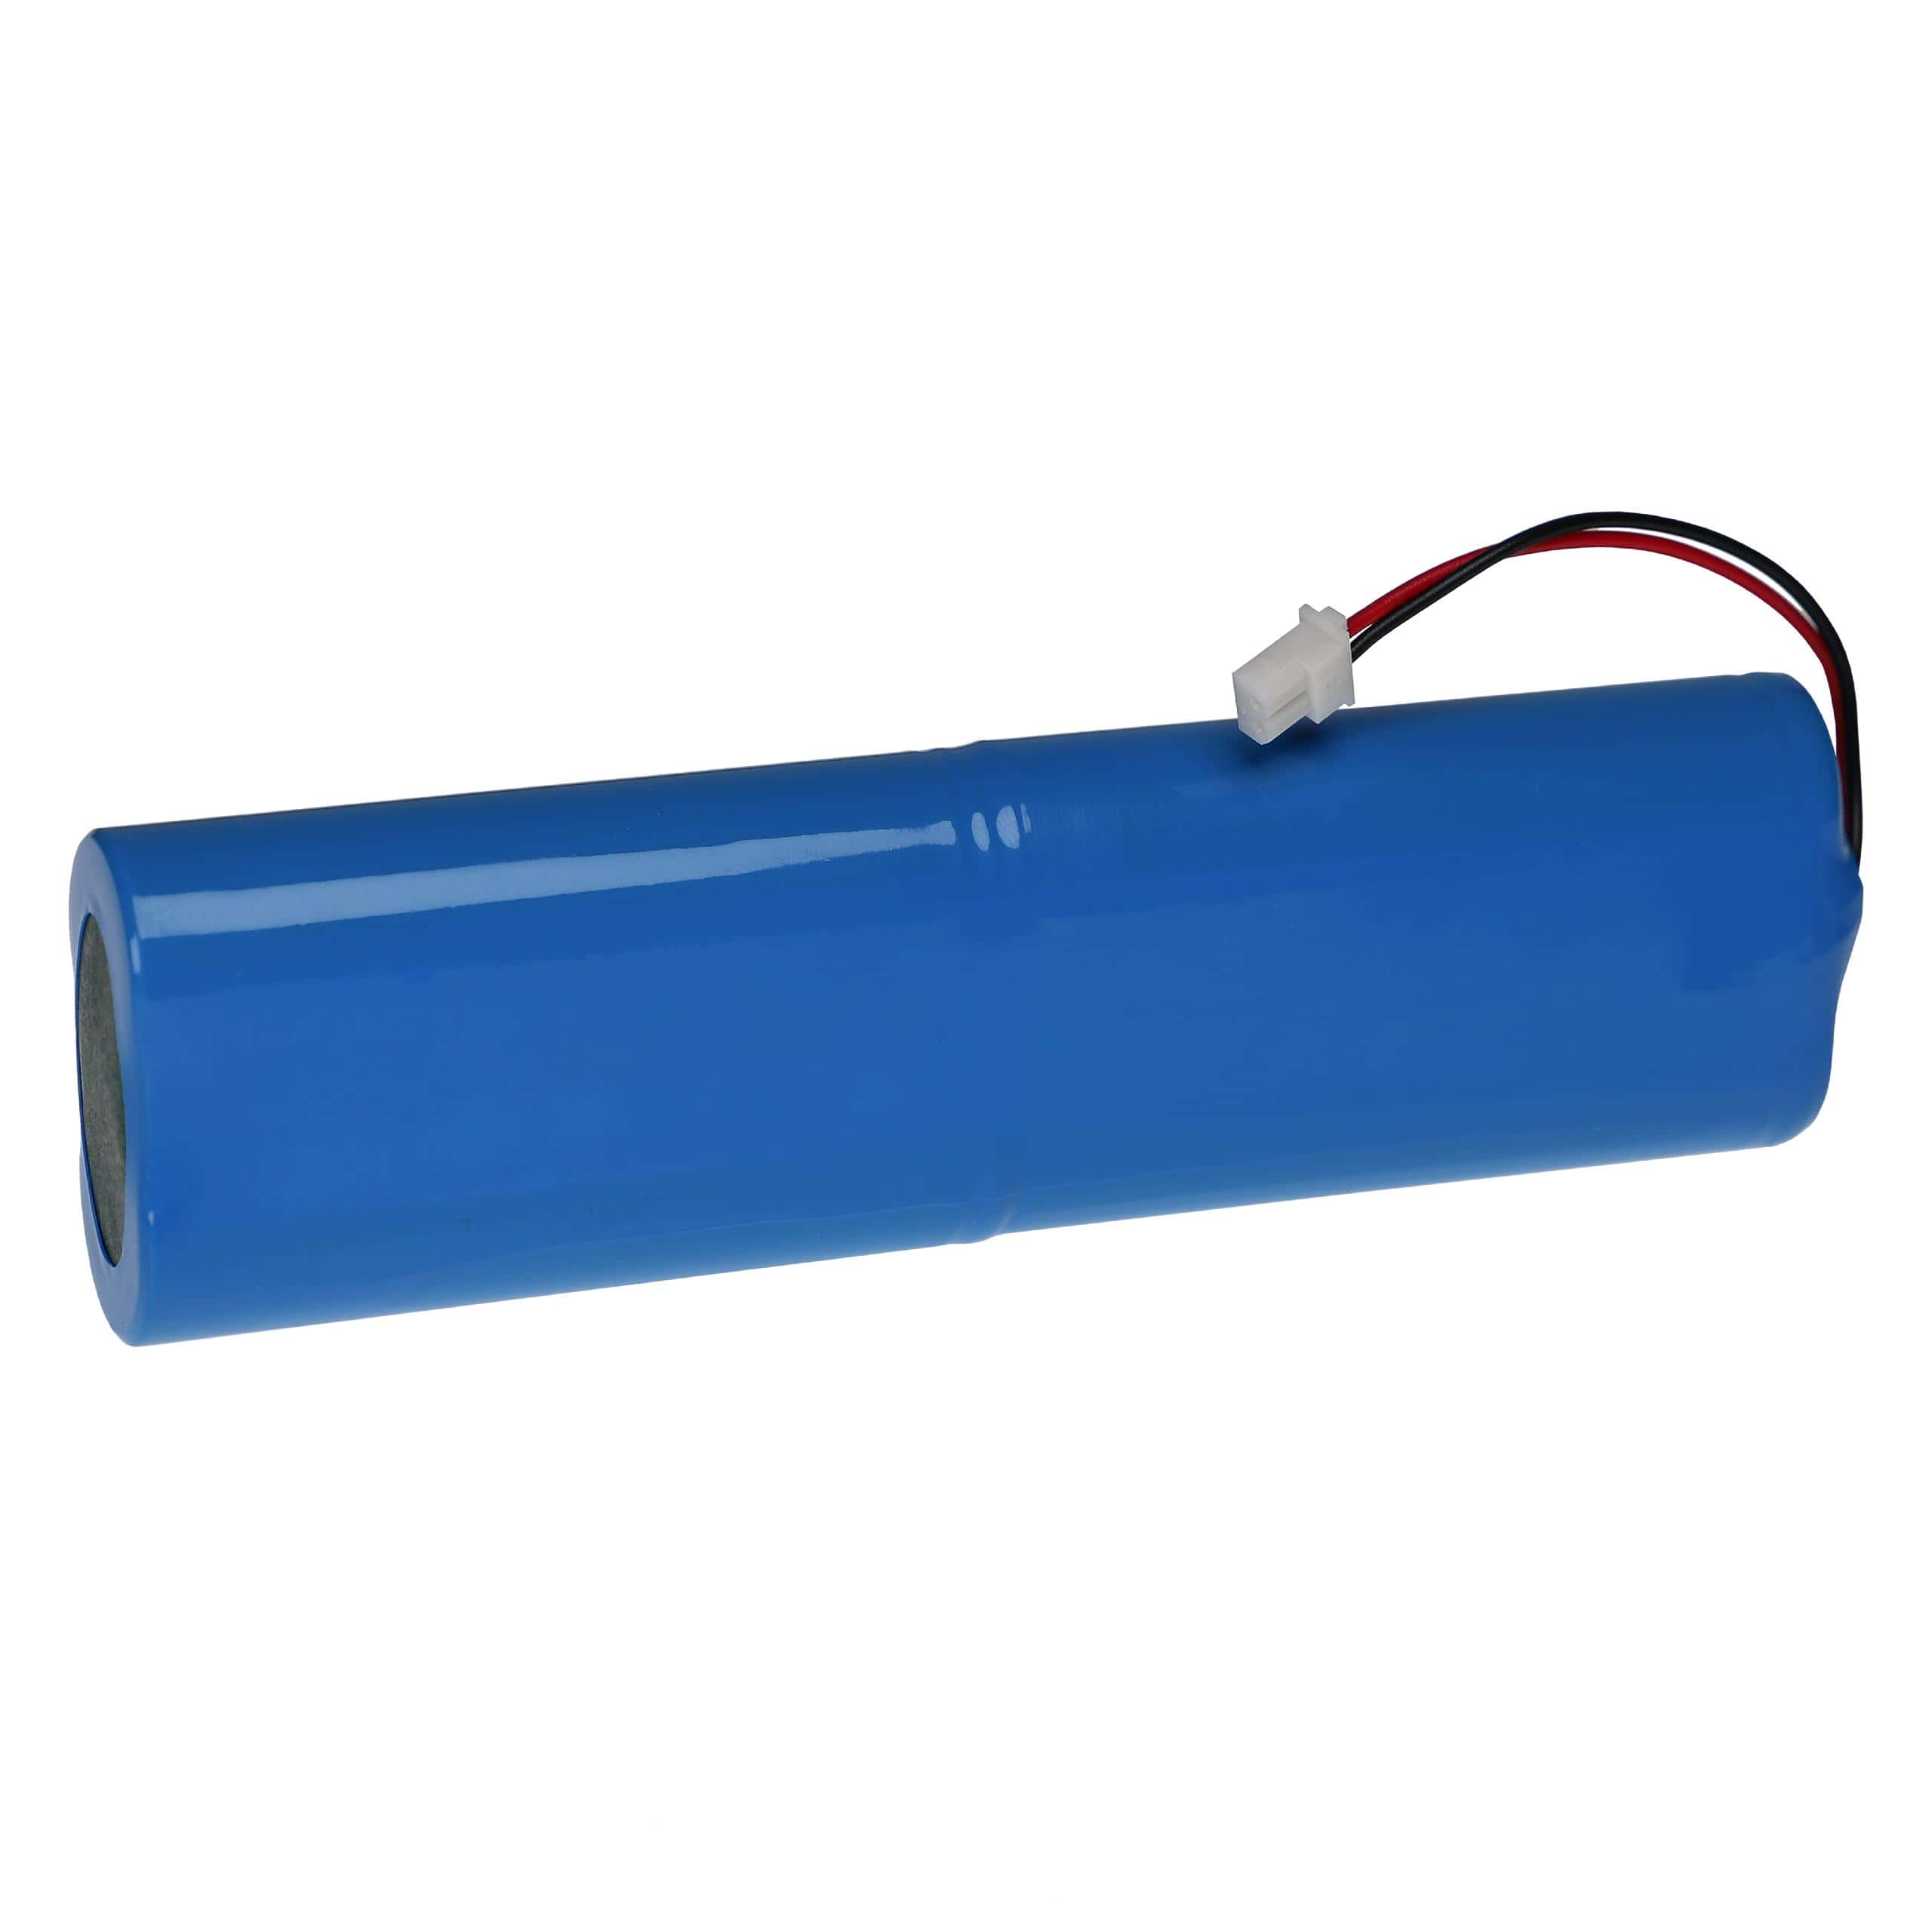 Batterie remplace Topcon 24-030001-01 pour outil de mesure - 4400mAh 7,4V Li-ion